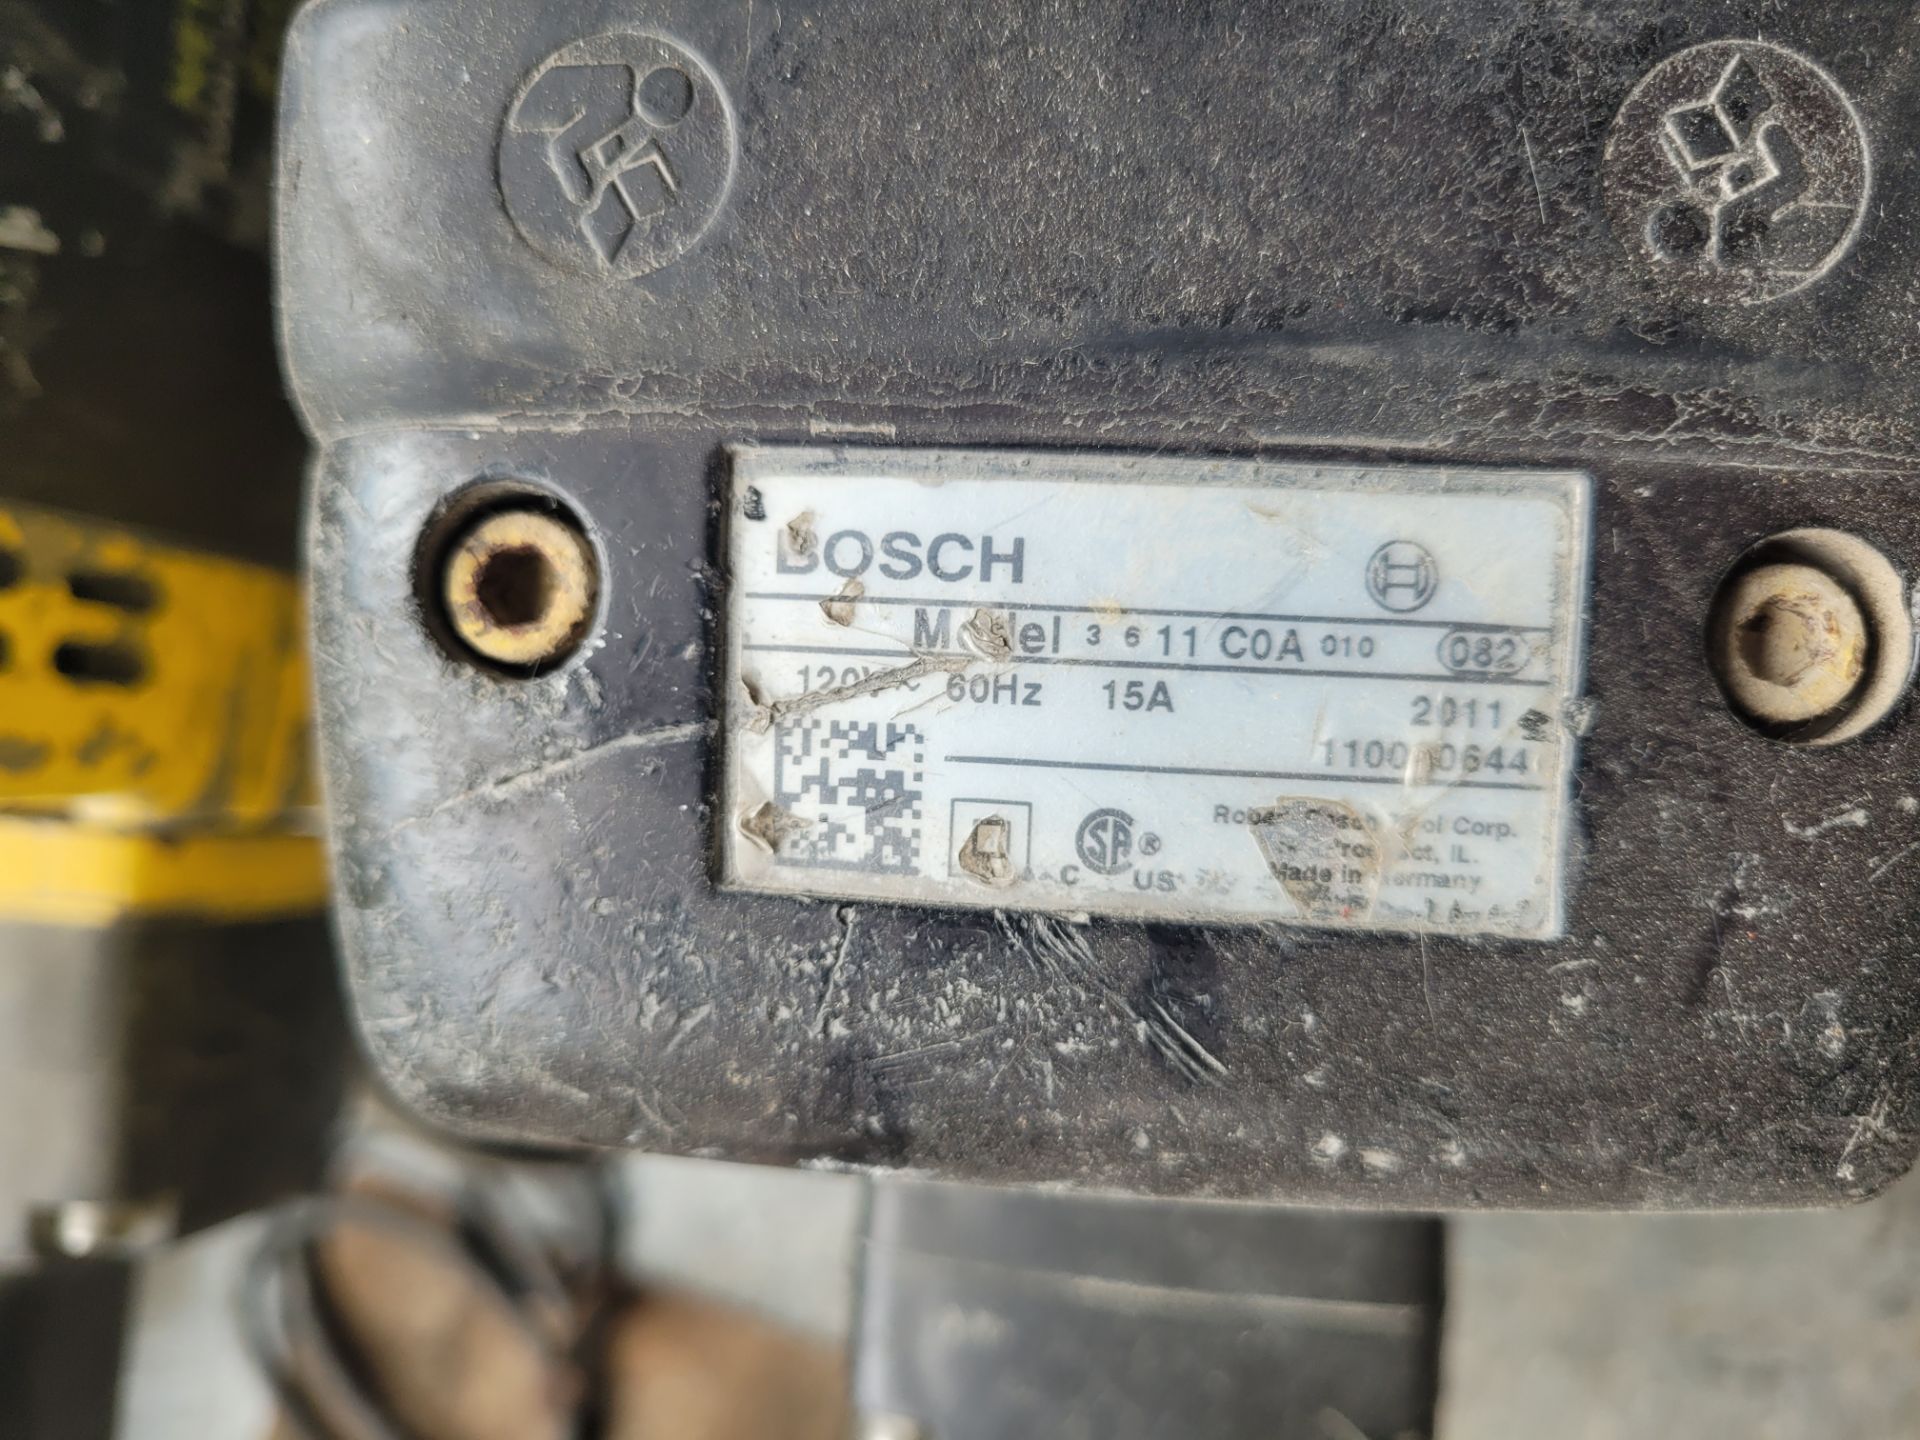 BOSCH mod. 3611C0A010 Concrete Demolition / Breaker Hammer, Electric 120V - Image 4 of 4